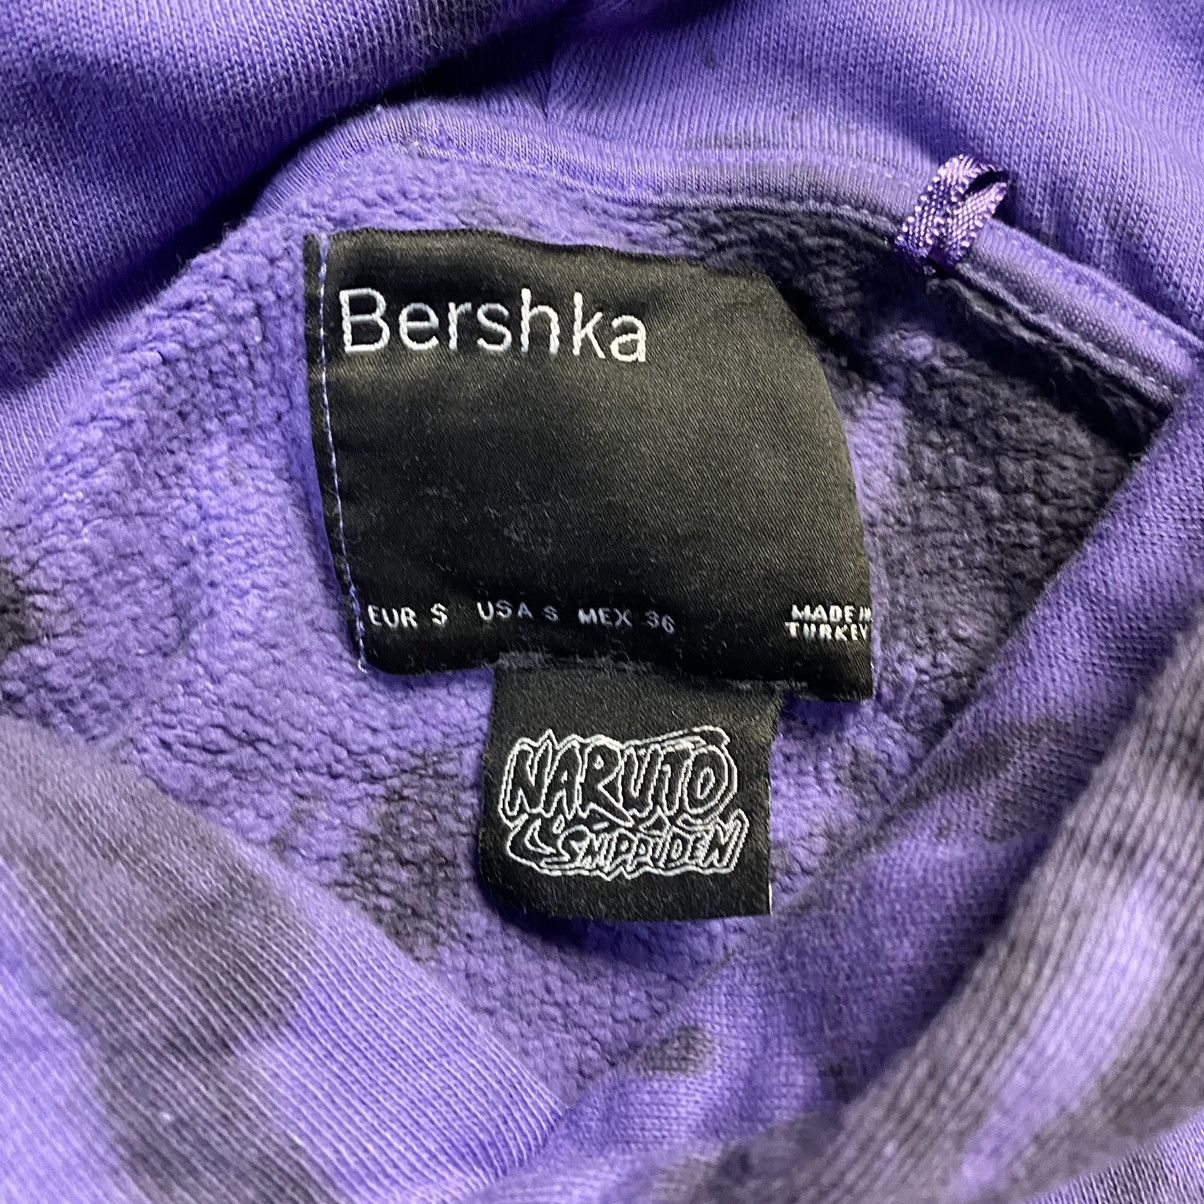 Bershka Bershka Naruto Shippuden Sasuke Sharingan Tie Dye Hoodie Size US S / EU 44-46 / 1 - 3 Thumbnail